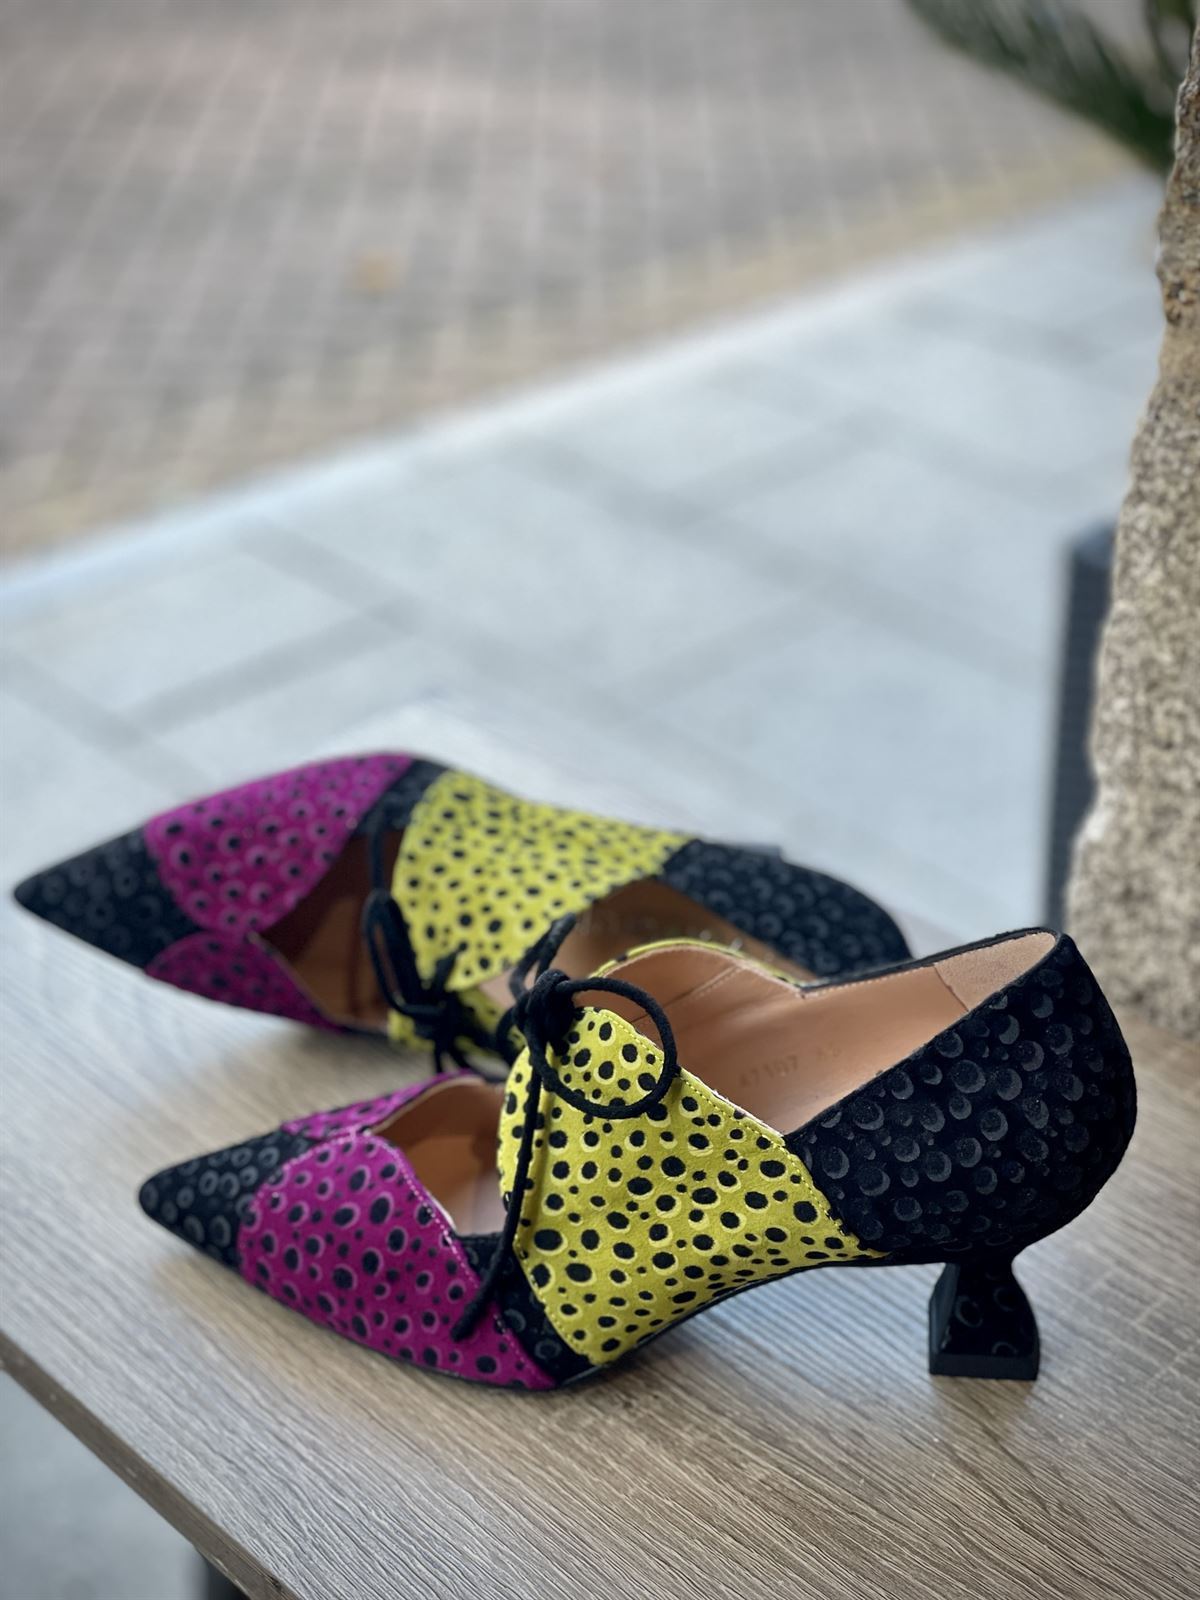 Zapatos Angari cordones grabados tricolor - Imagen 2